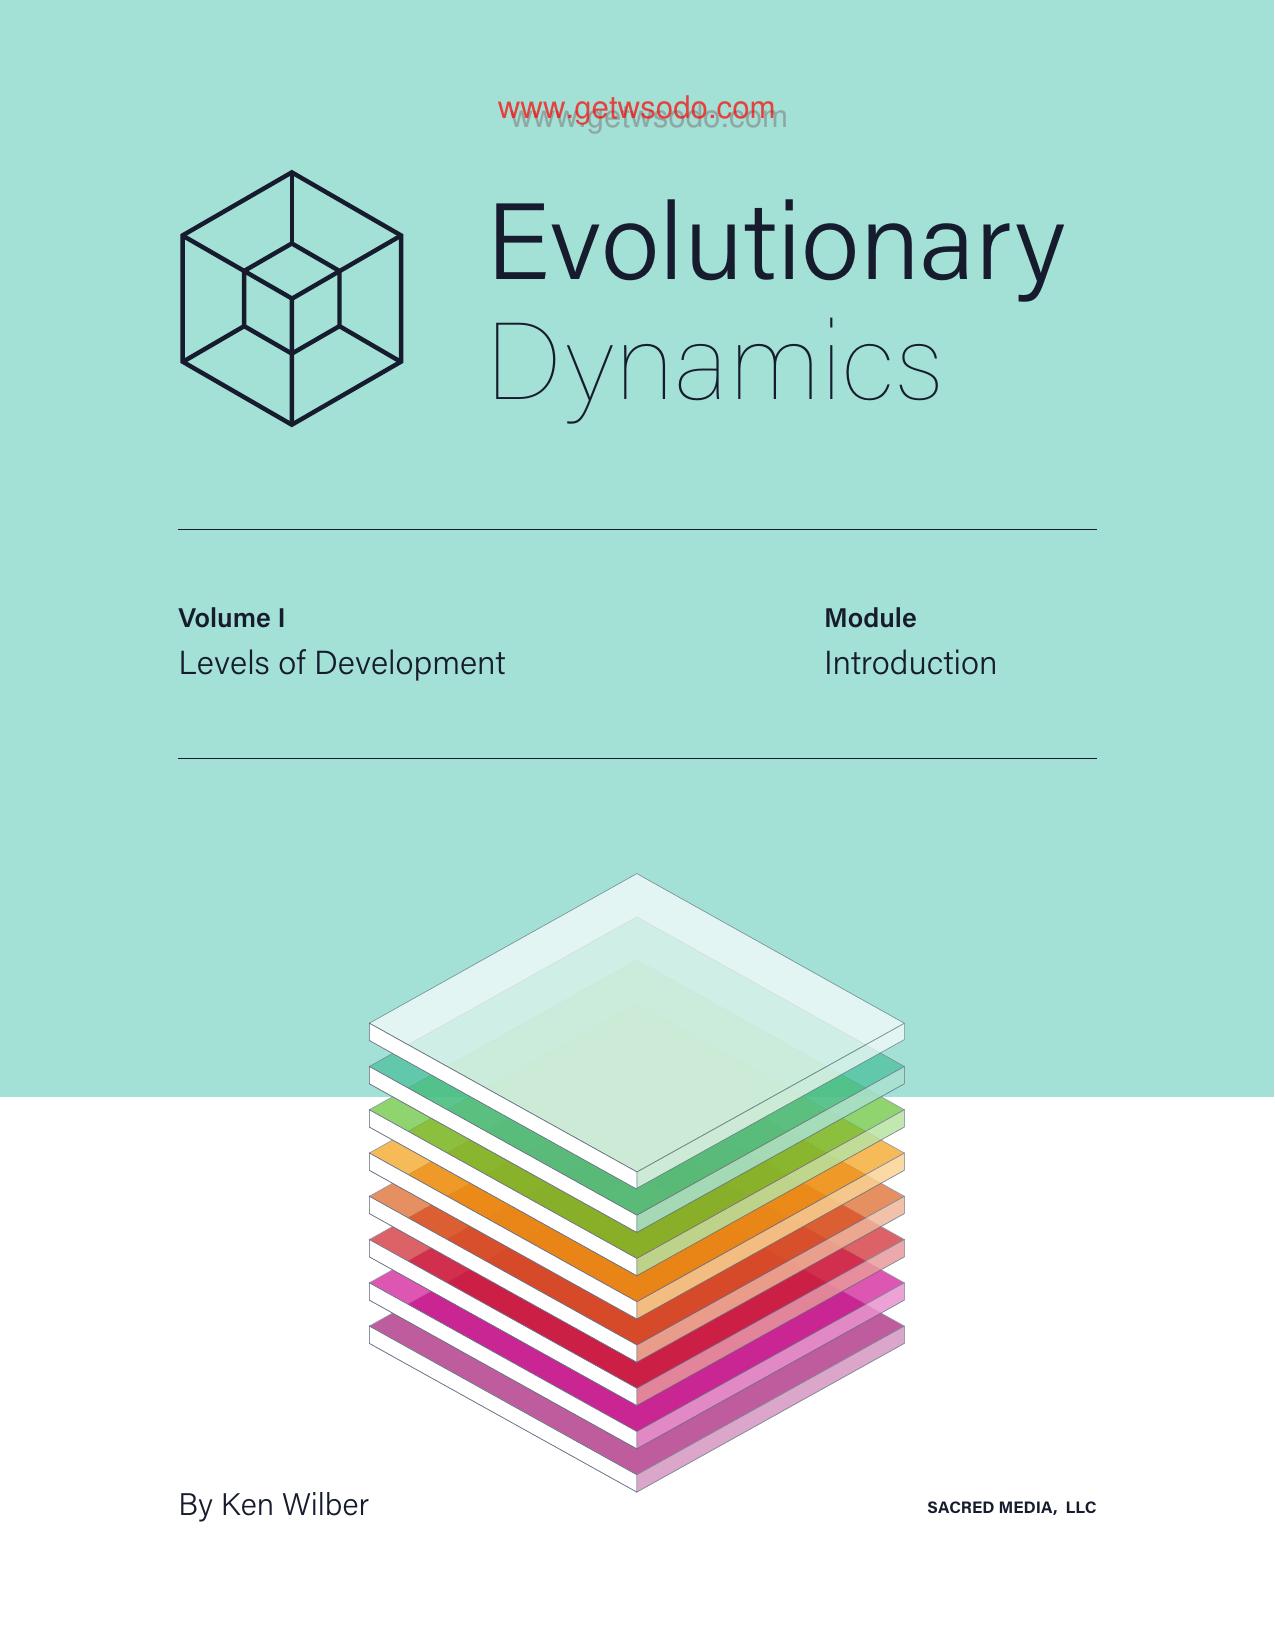 Evolutionary Dynamics Course Book